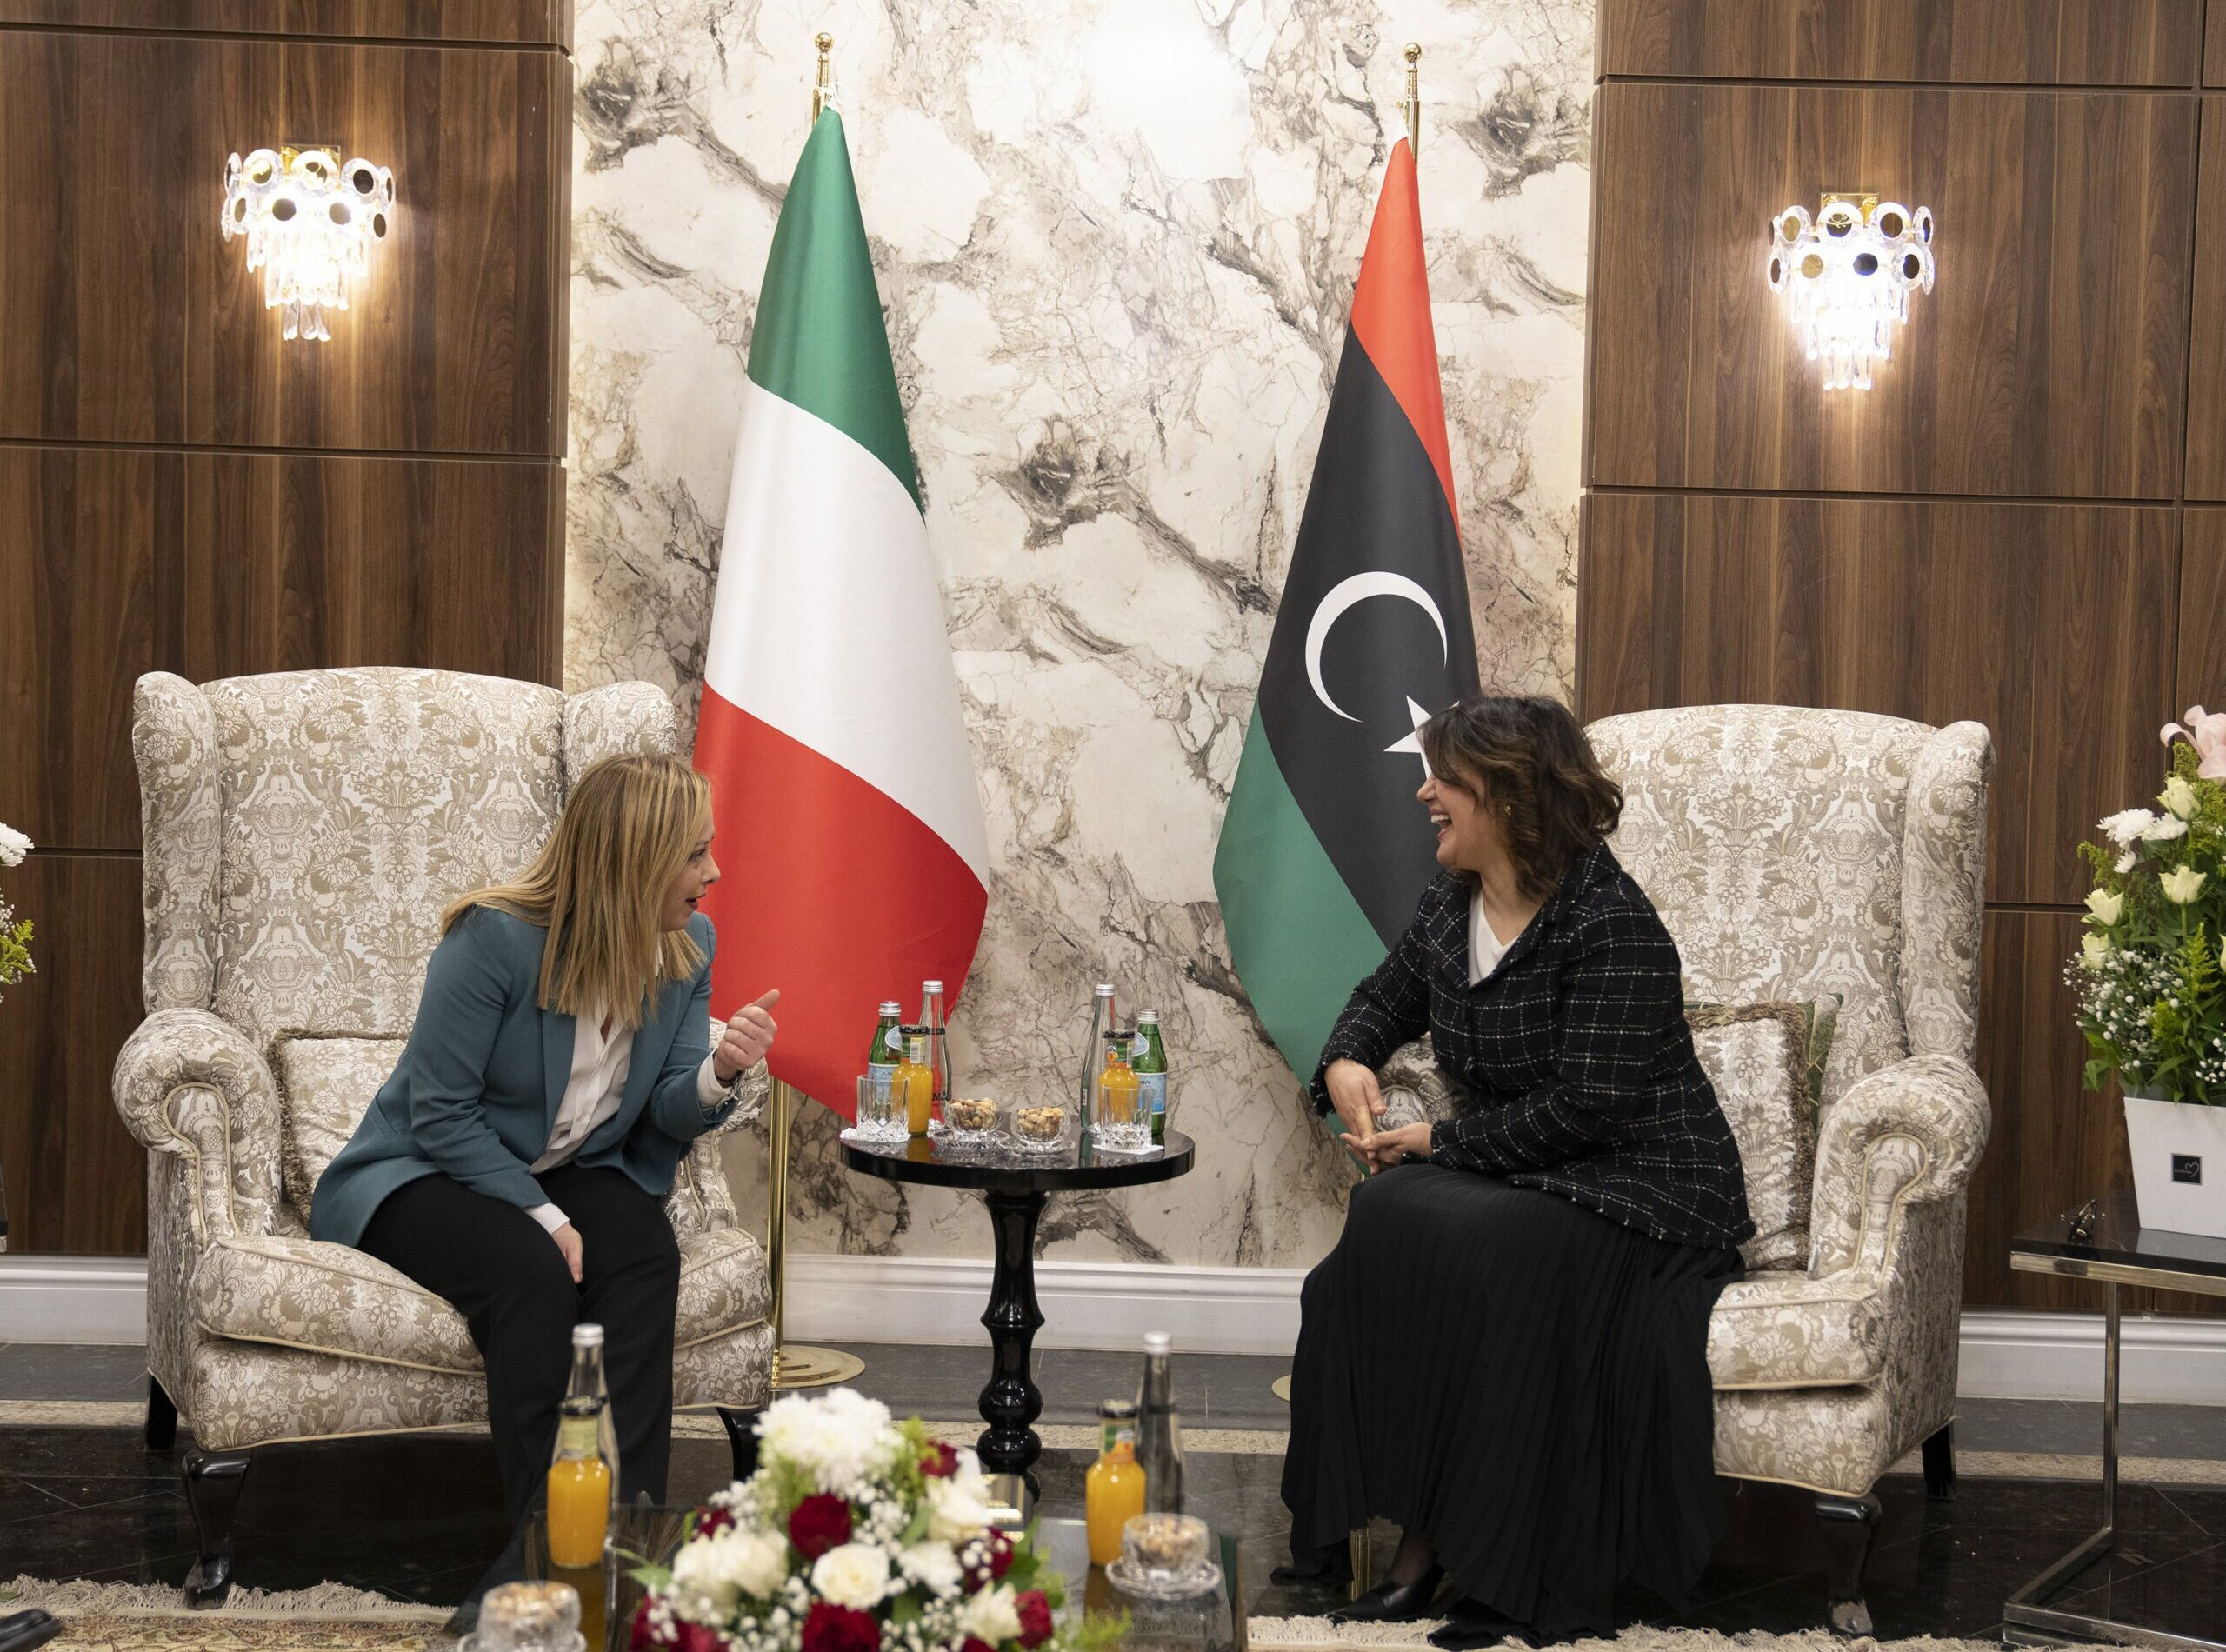 Accordi Italia-Libia: energia e sviluppo al centro del “Piano Mattei”